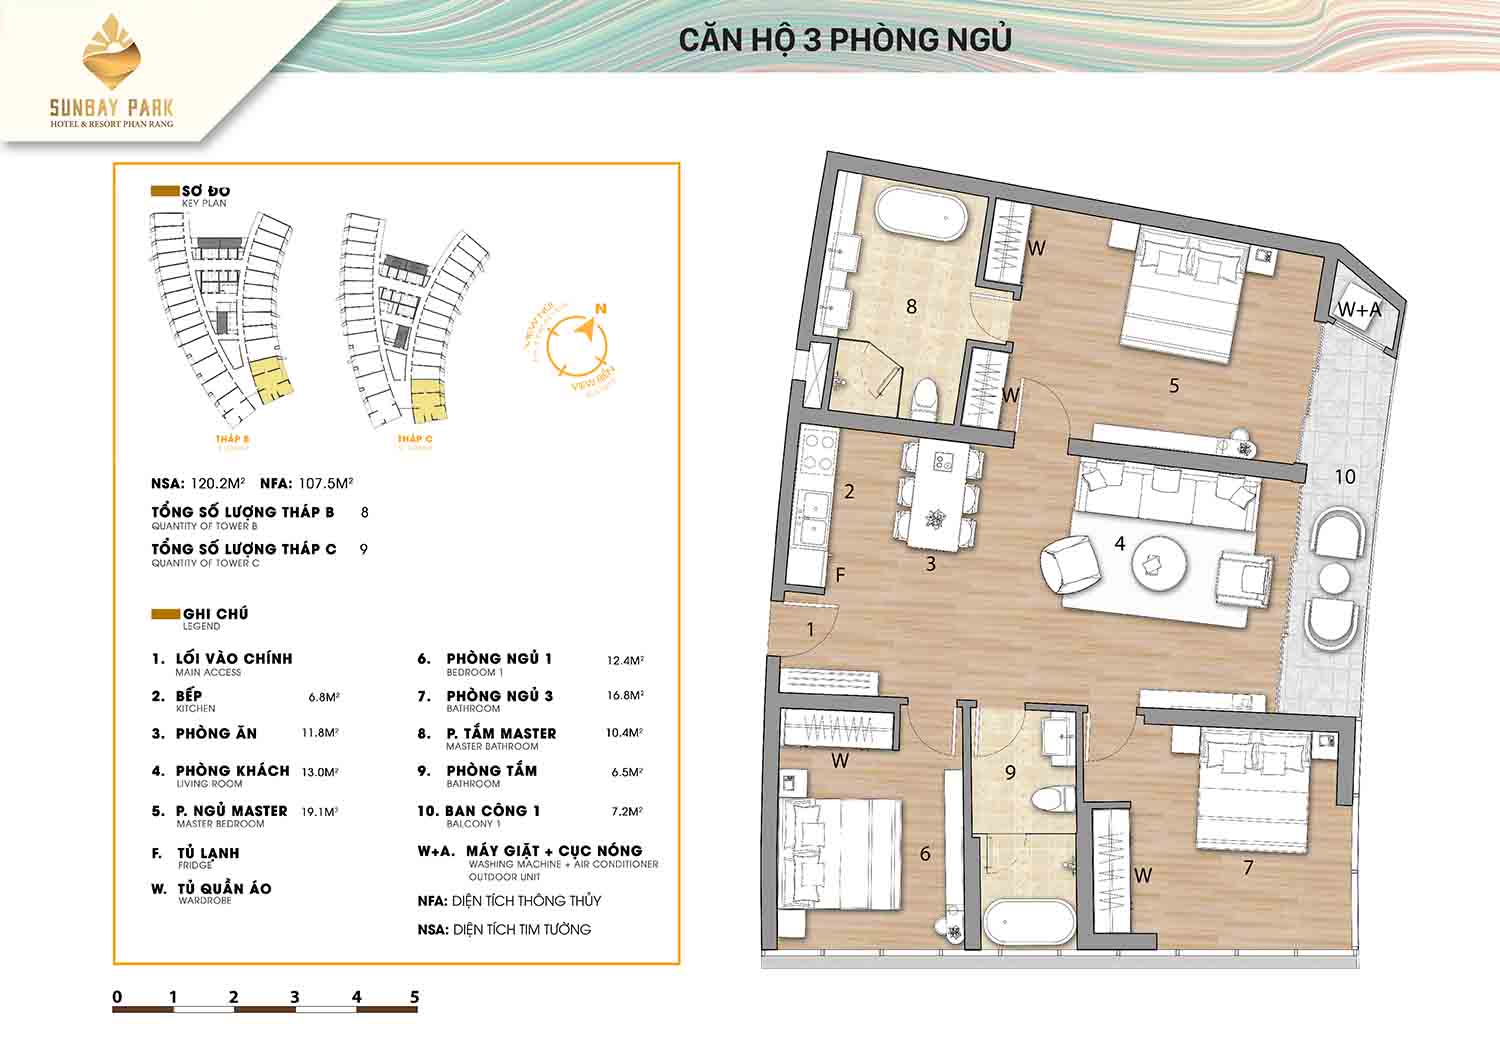 Thiết kế căn hộ 3 phòng ngủ 120,3m2 dự án Sunbay Park Phan Rang Ninh Thuận